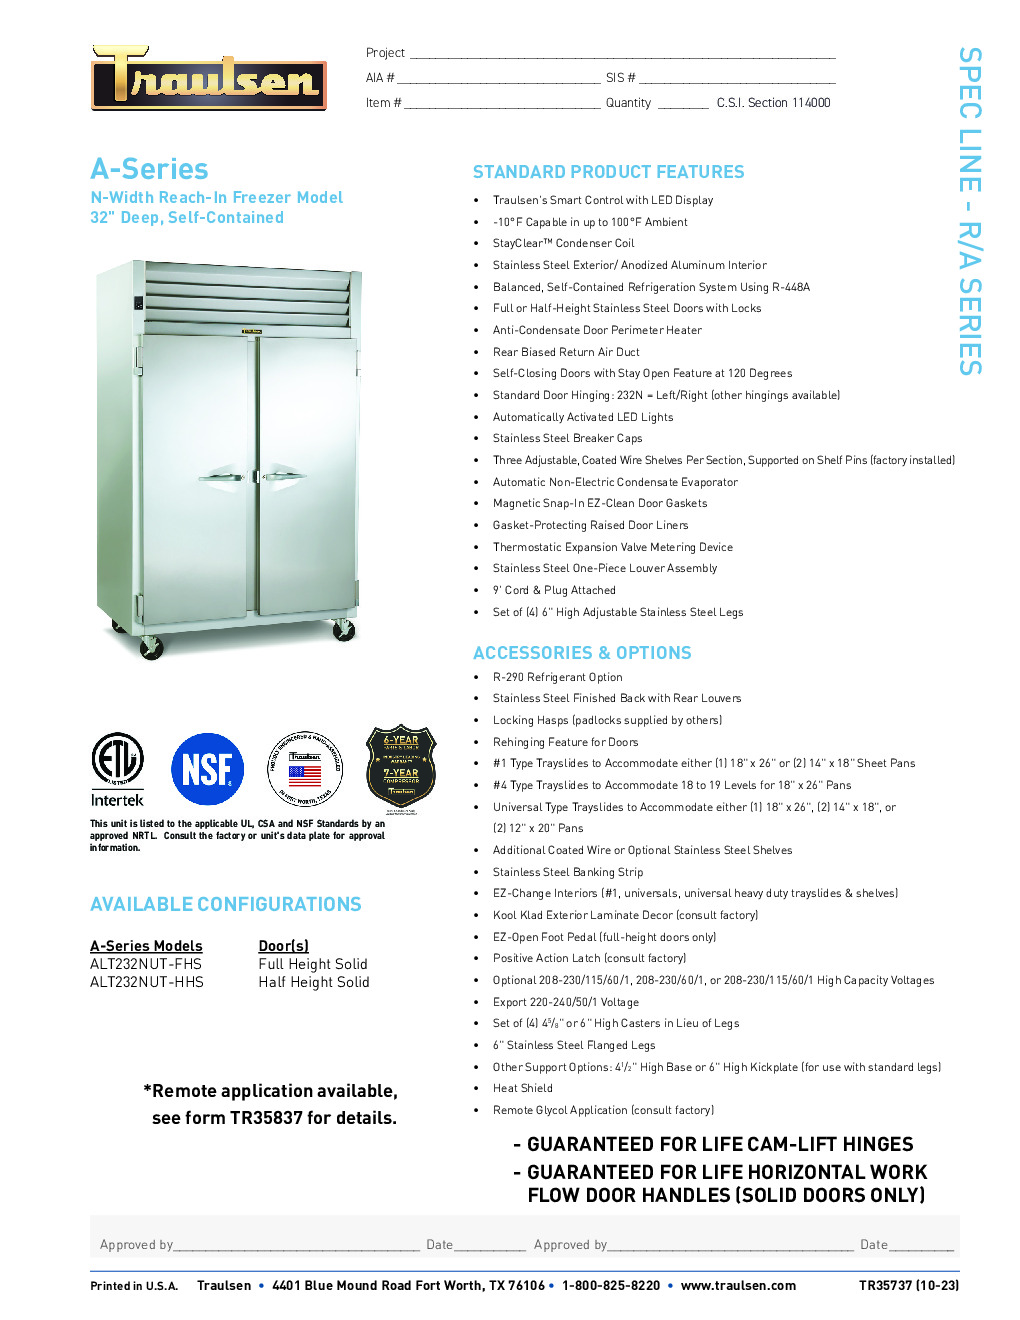 Traulsen ALT232N-HHS Reach-In Freezer